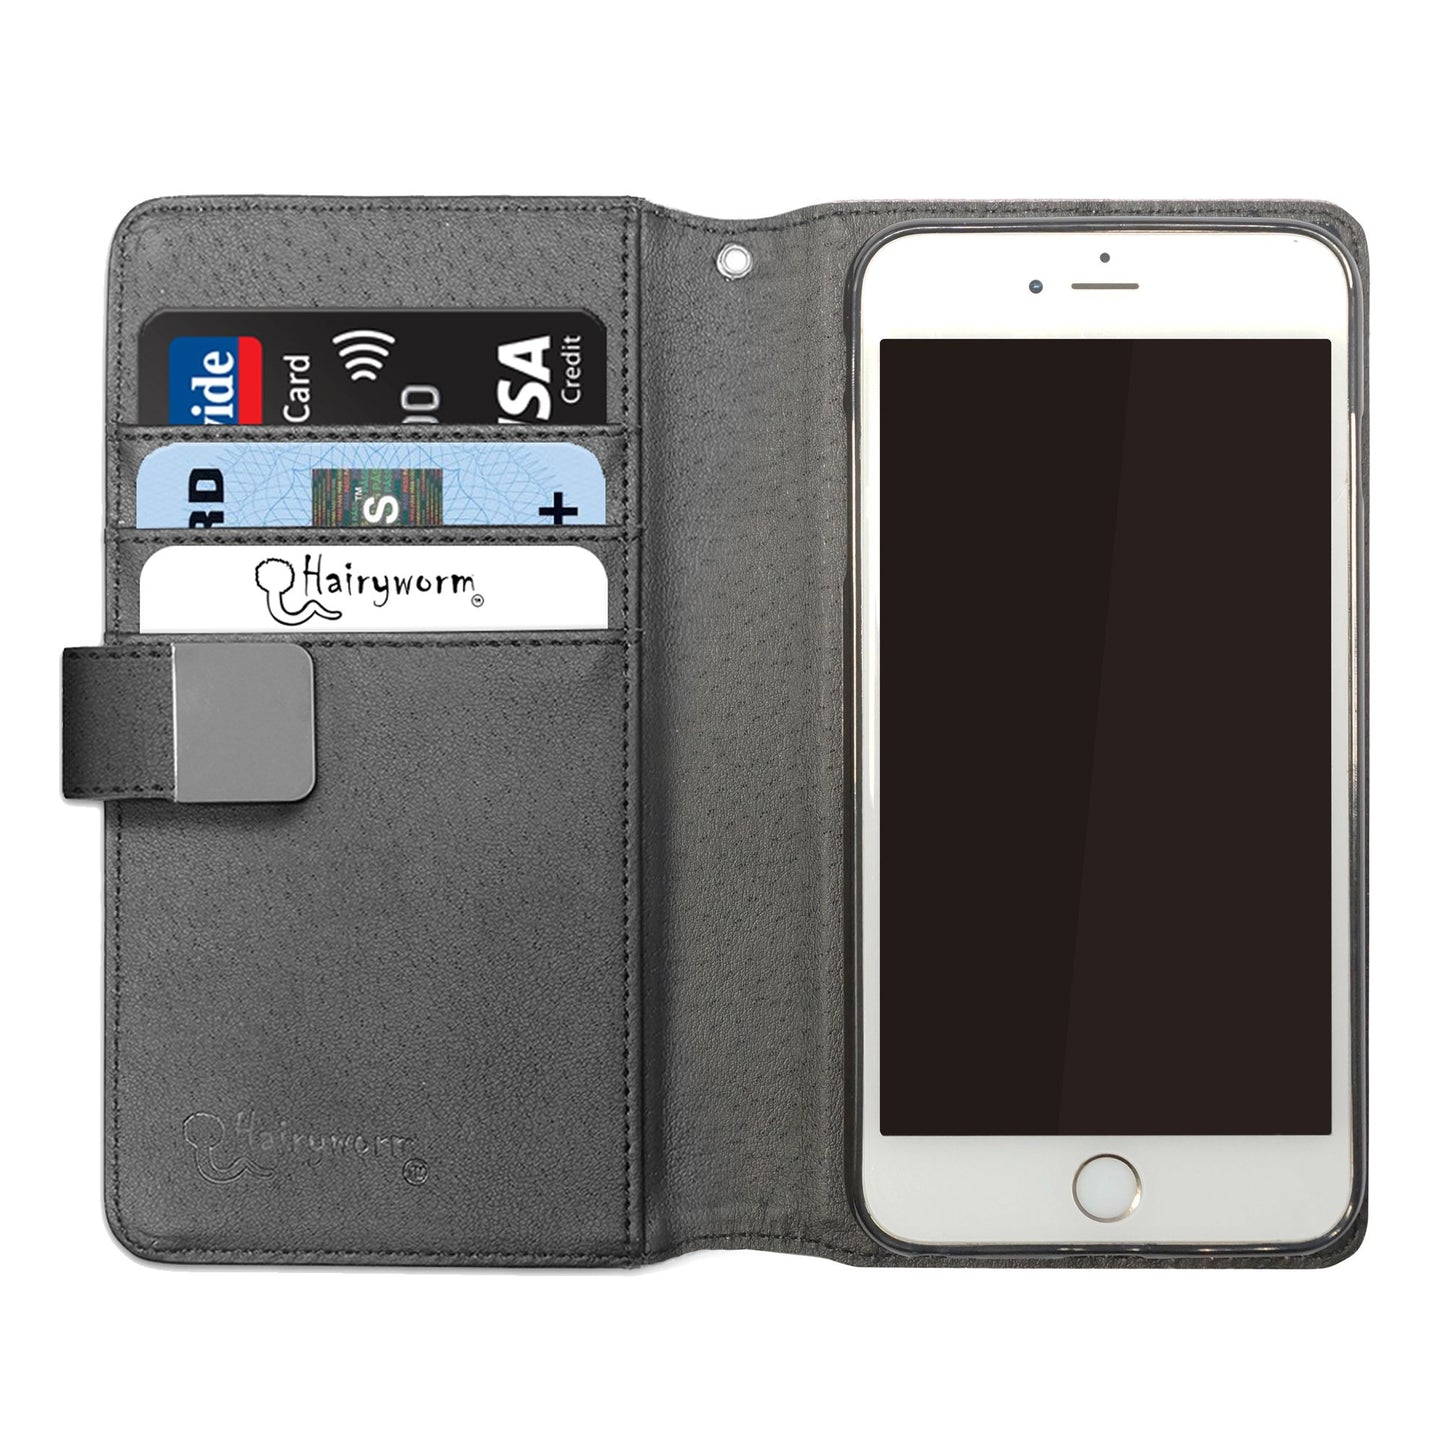 Personalisierte LG-Handy-Leder-Geldbörse mit goldenem floralem Einhorn und Text auf grauem Marmor